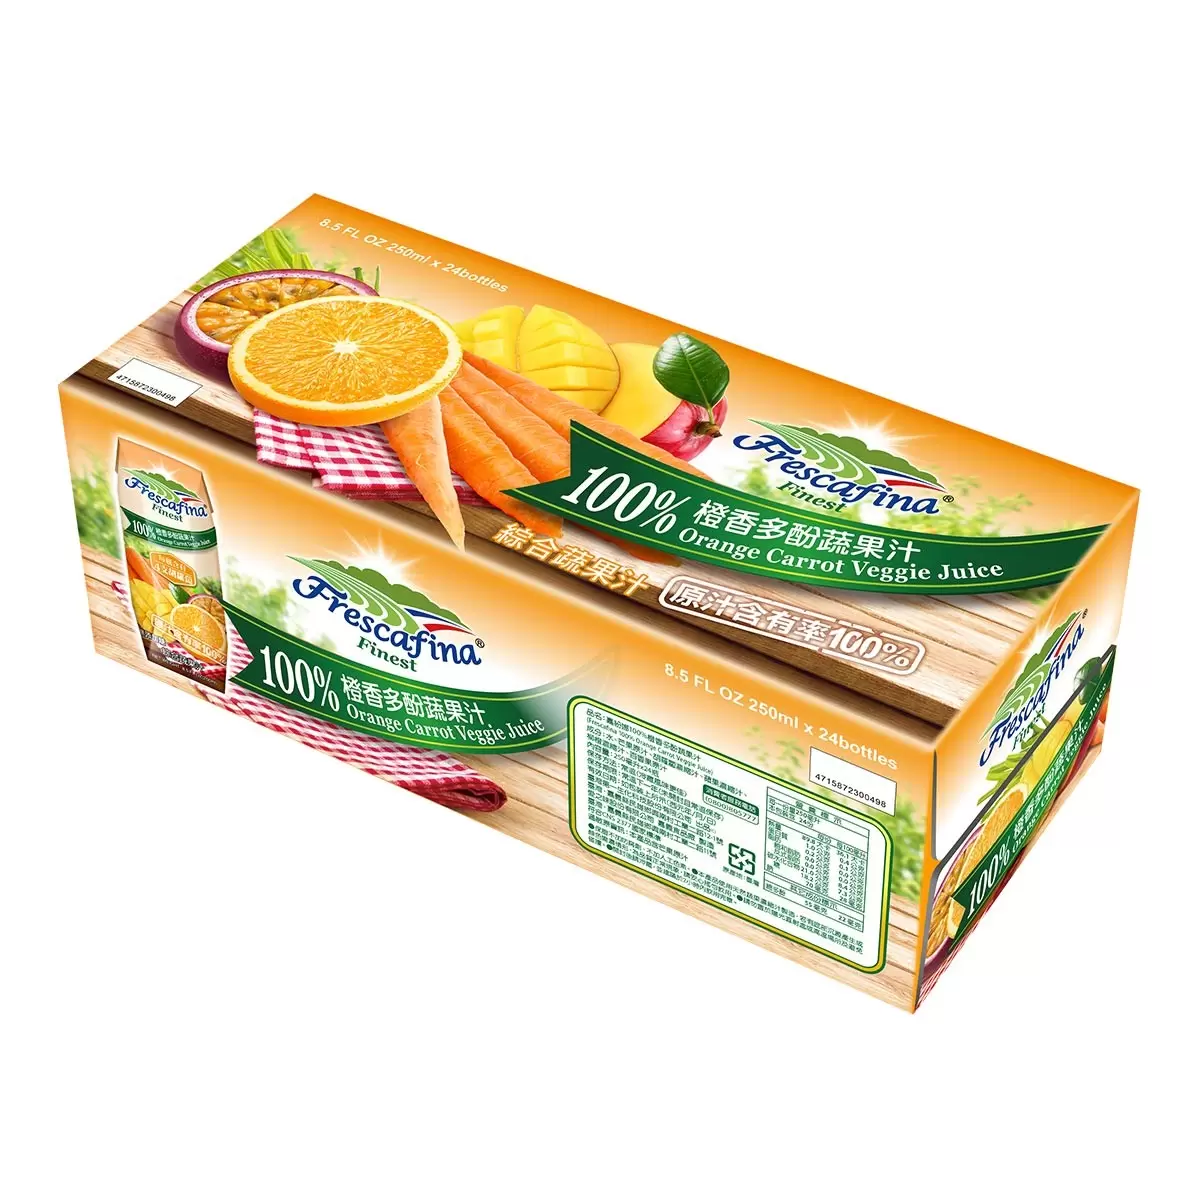 嘉紛娜 100% 橙香多酚蔬果汁 250毫升 X 24入